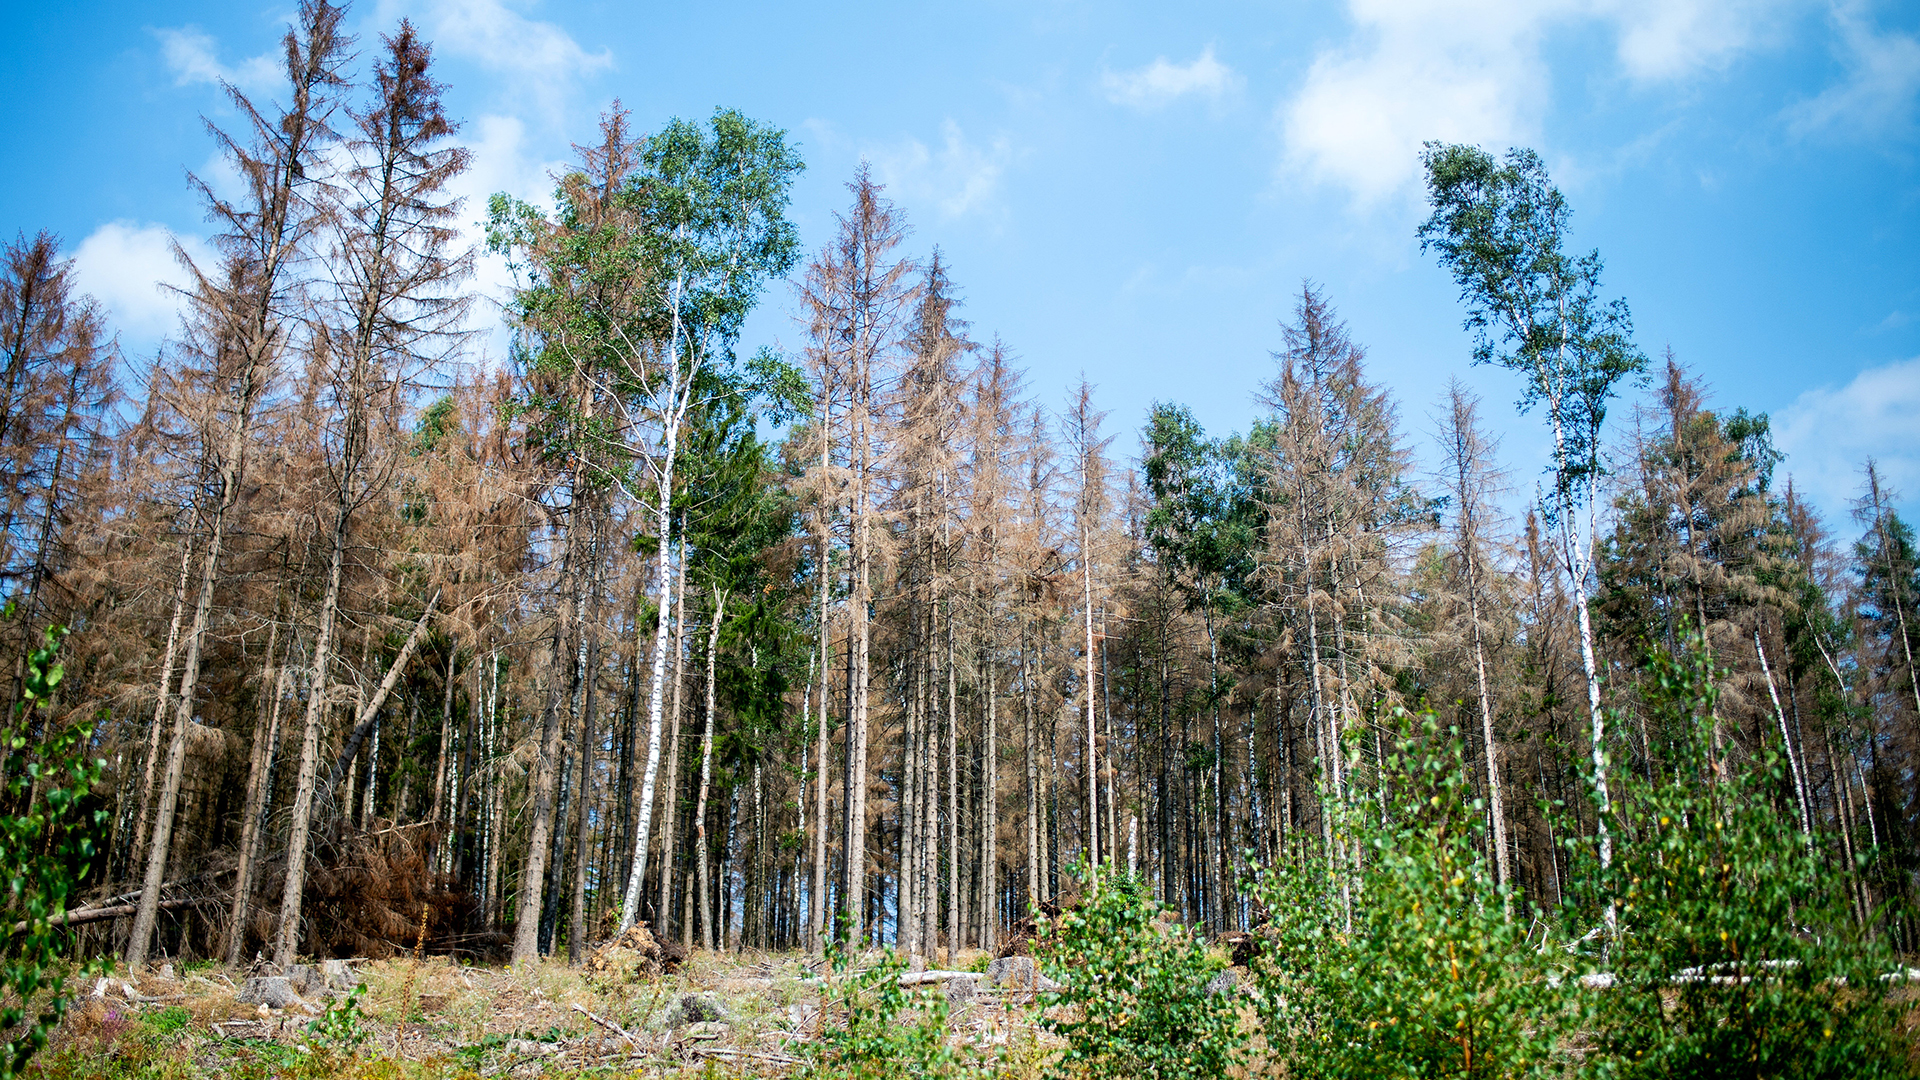 Vertrocknete Nadelbäume stehen in einem vom Borkenkäfern zerstörten Fichtenwald. | picture alliance / Hauke-Christi